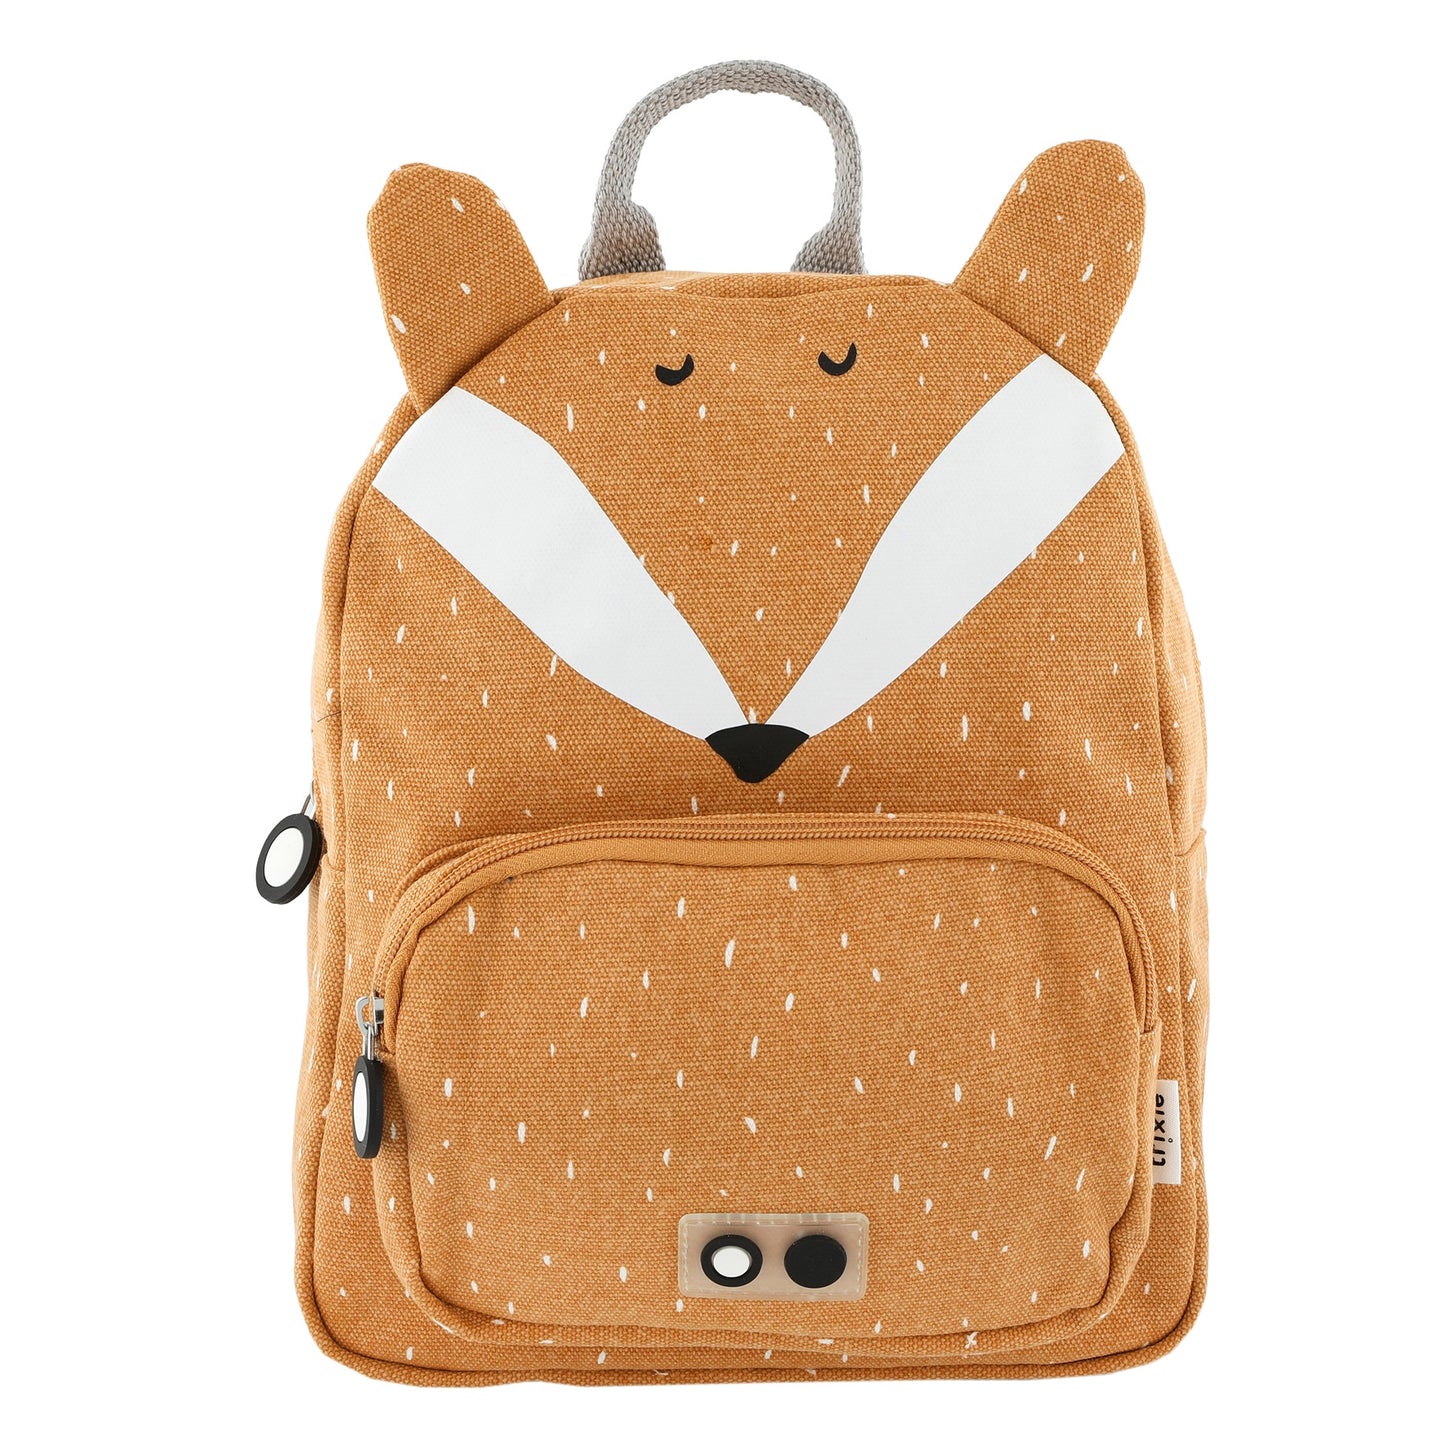 Fox Backpack